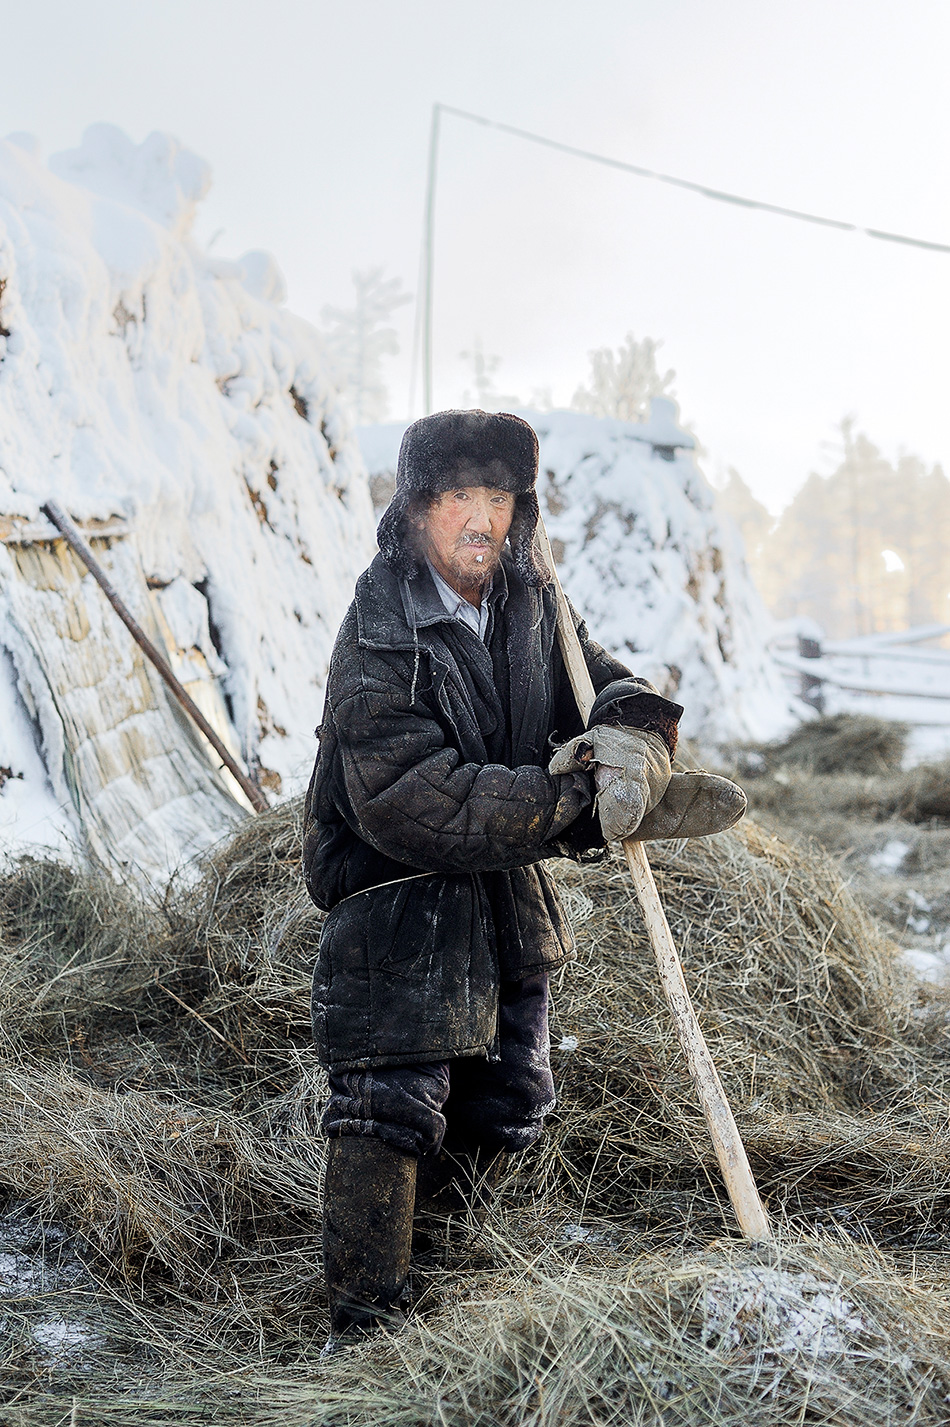 Jakutsk je prestolnica Jakutije v severovzhodni Rusiji in je najbolj mrzlo poseljeno mesto tovrstne velikosti na svetu (ima okoli 280 000 prebivalcev, op. prev.). Mesto leži na bregovih reke Lene, pozimi pa je povprečna temperatura – 40 °C, mesto obkroža gosta megla. V manjših okoliških naseljih se včasih temperature spustijo še nižje.